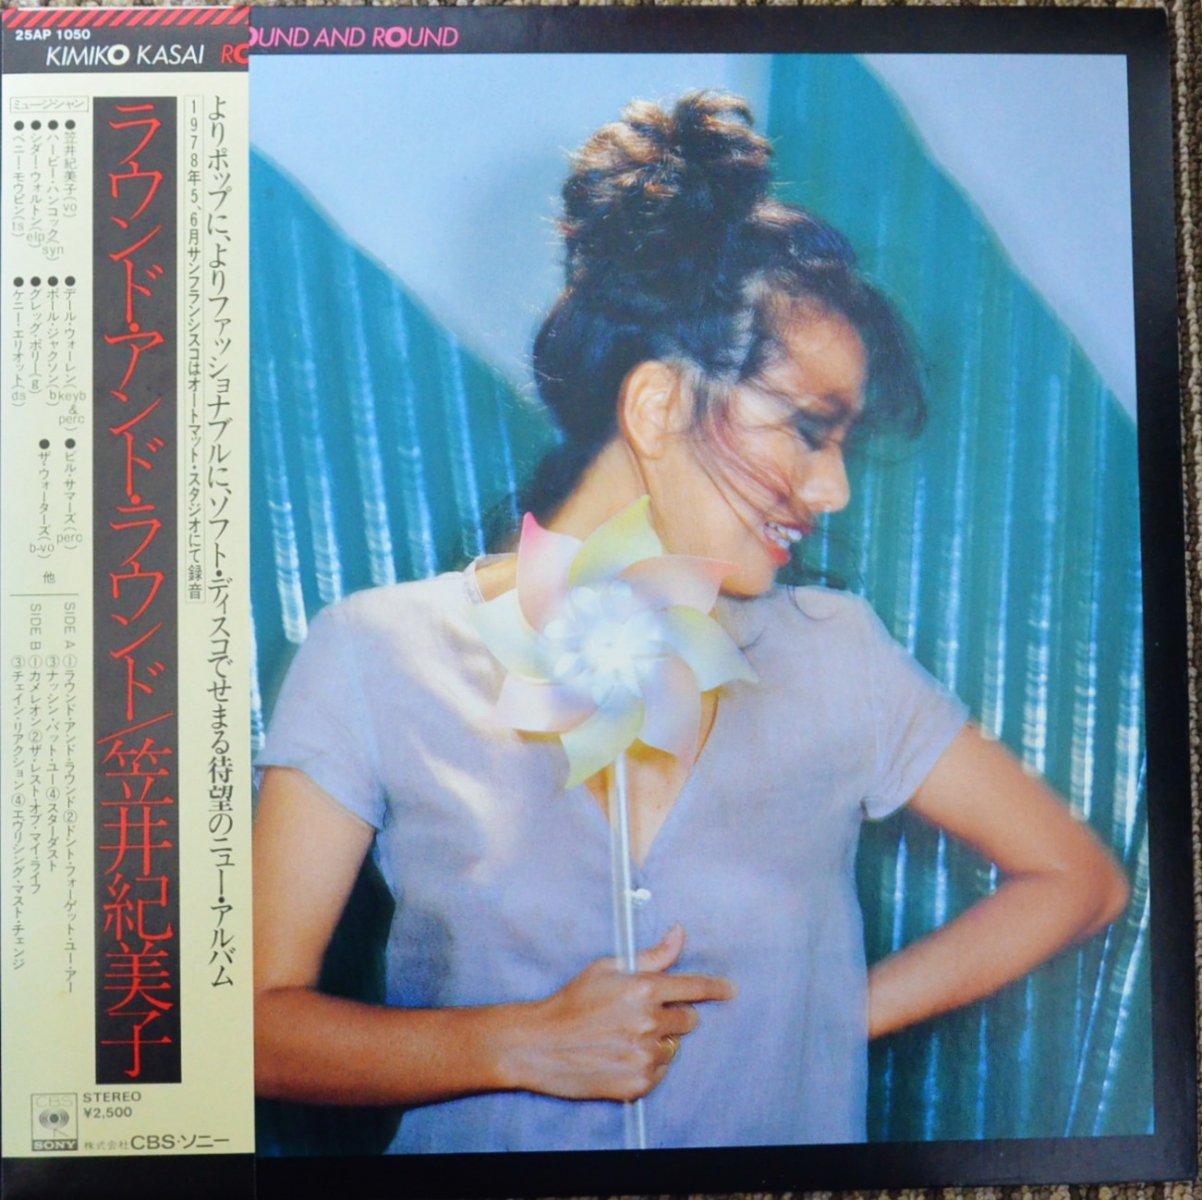 笠井紀美子  KIMIKO KASAI / ラウンド・アンド・ラウンド ROUND AND ROUND (LP)